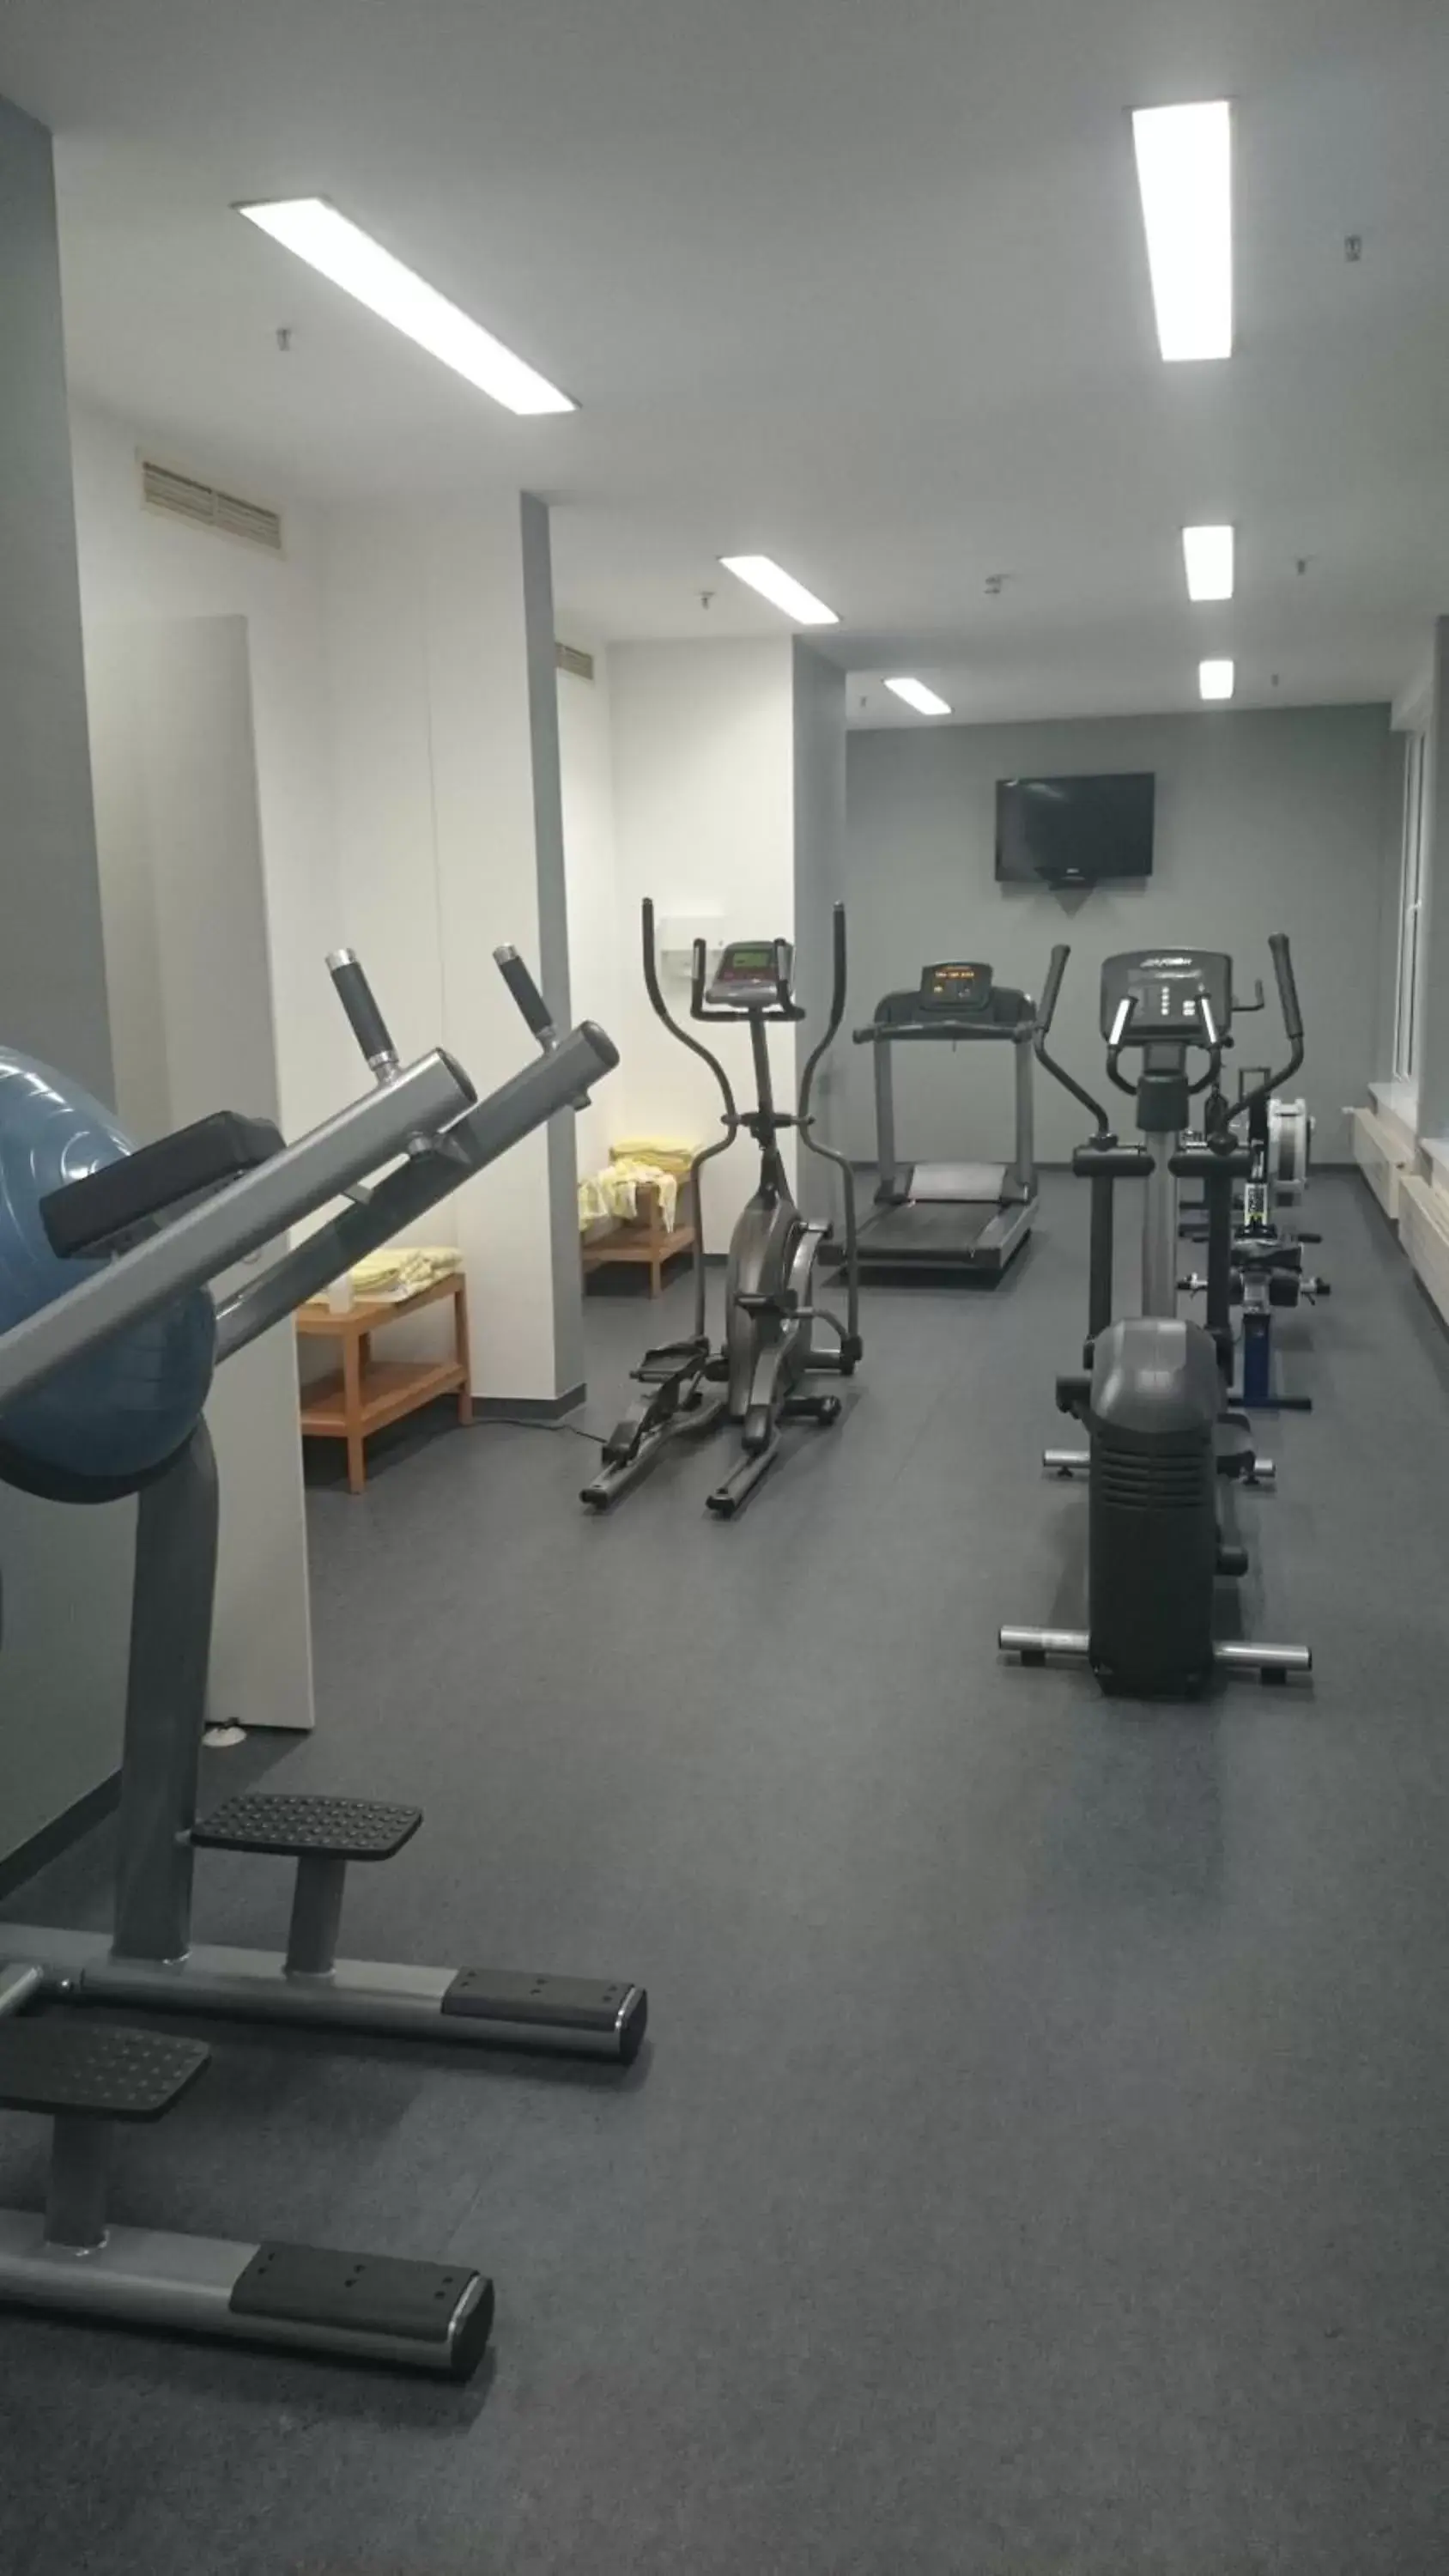 Fitness centre/facilities, Fitness Center/Facilities in relexa Hotel Frankfurt am Main (Superior)